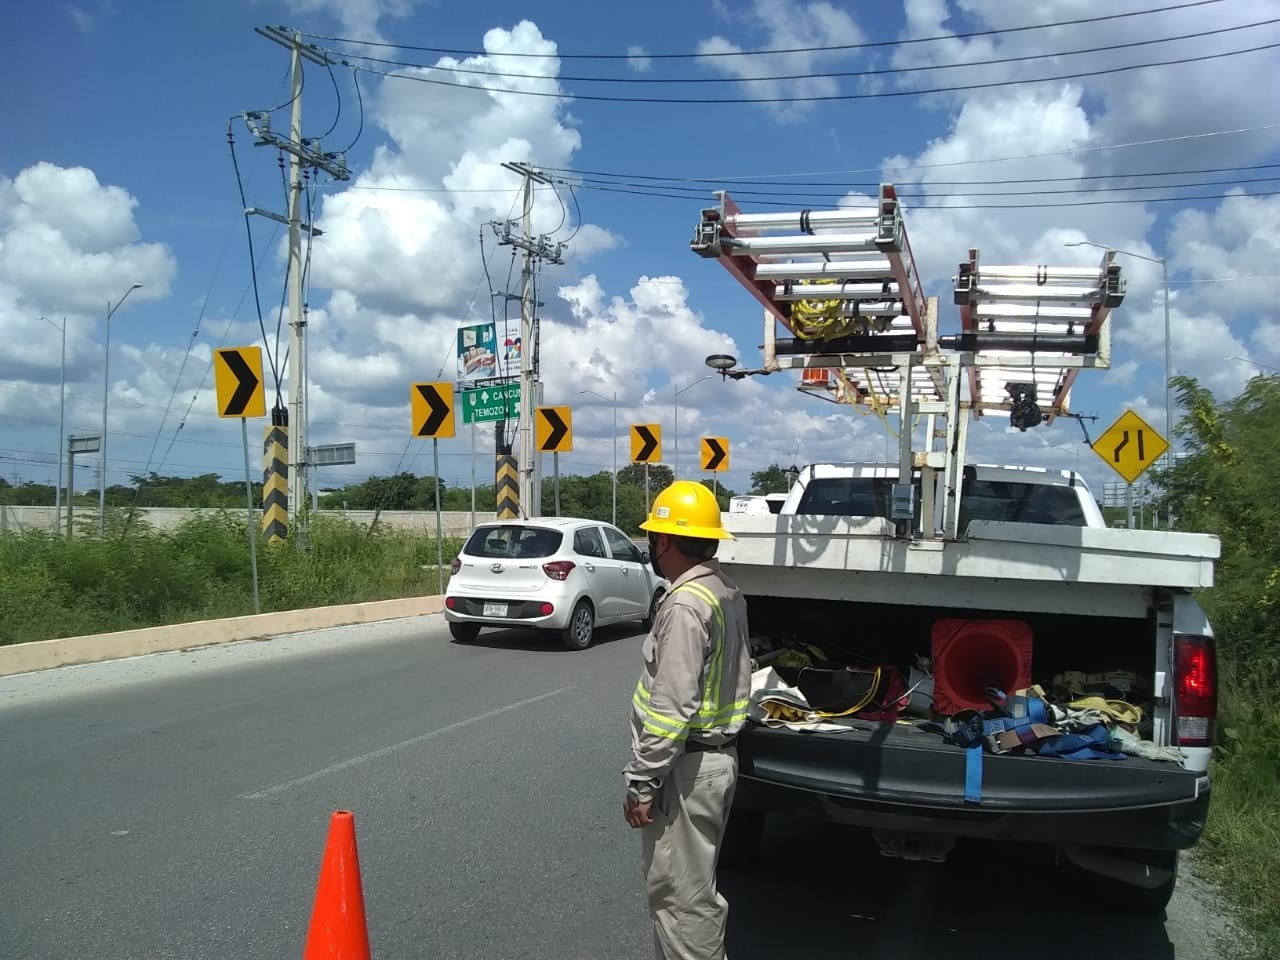 La Comisión Federal de Electricidad informó que este martes 07 de diciembre, se realizará cortes a la energía eléctrica en diversos puntos de Campeche